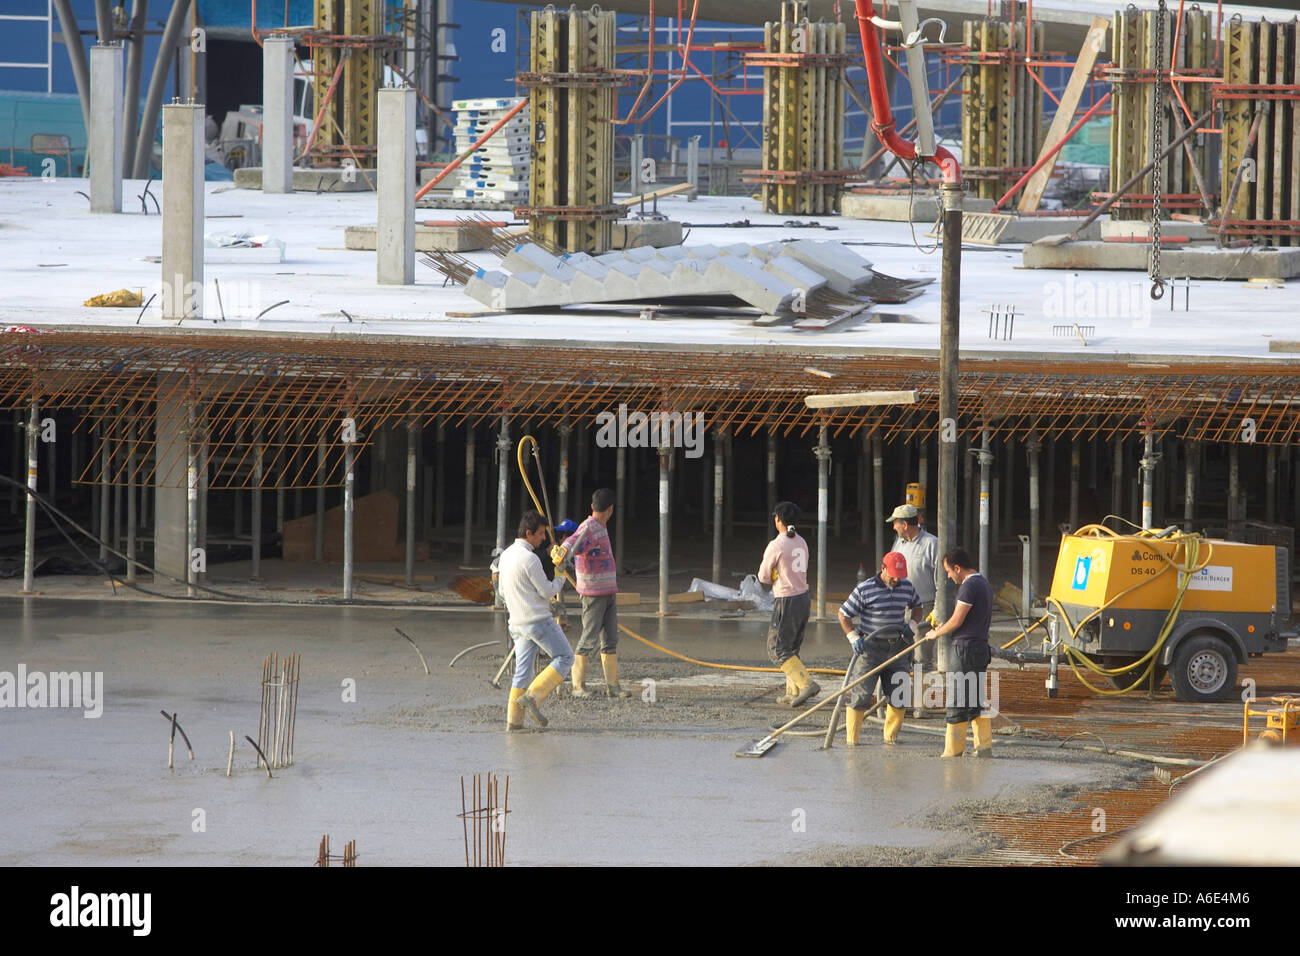 08.06.2005, Mannheim, DEU, construction worker doing concrete work underground parking SAP arena Mannheim Stock Photo